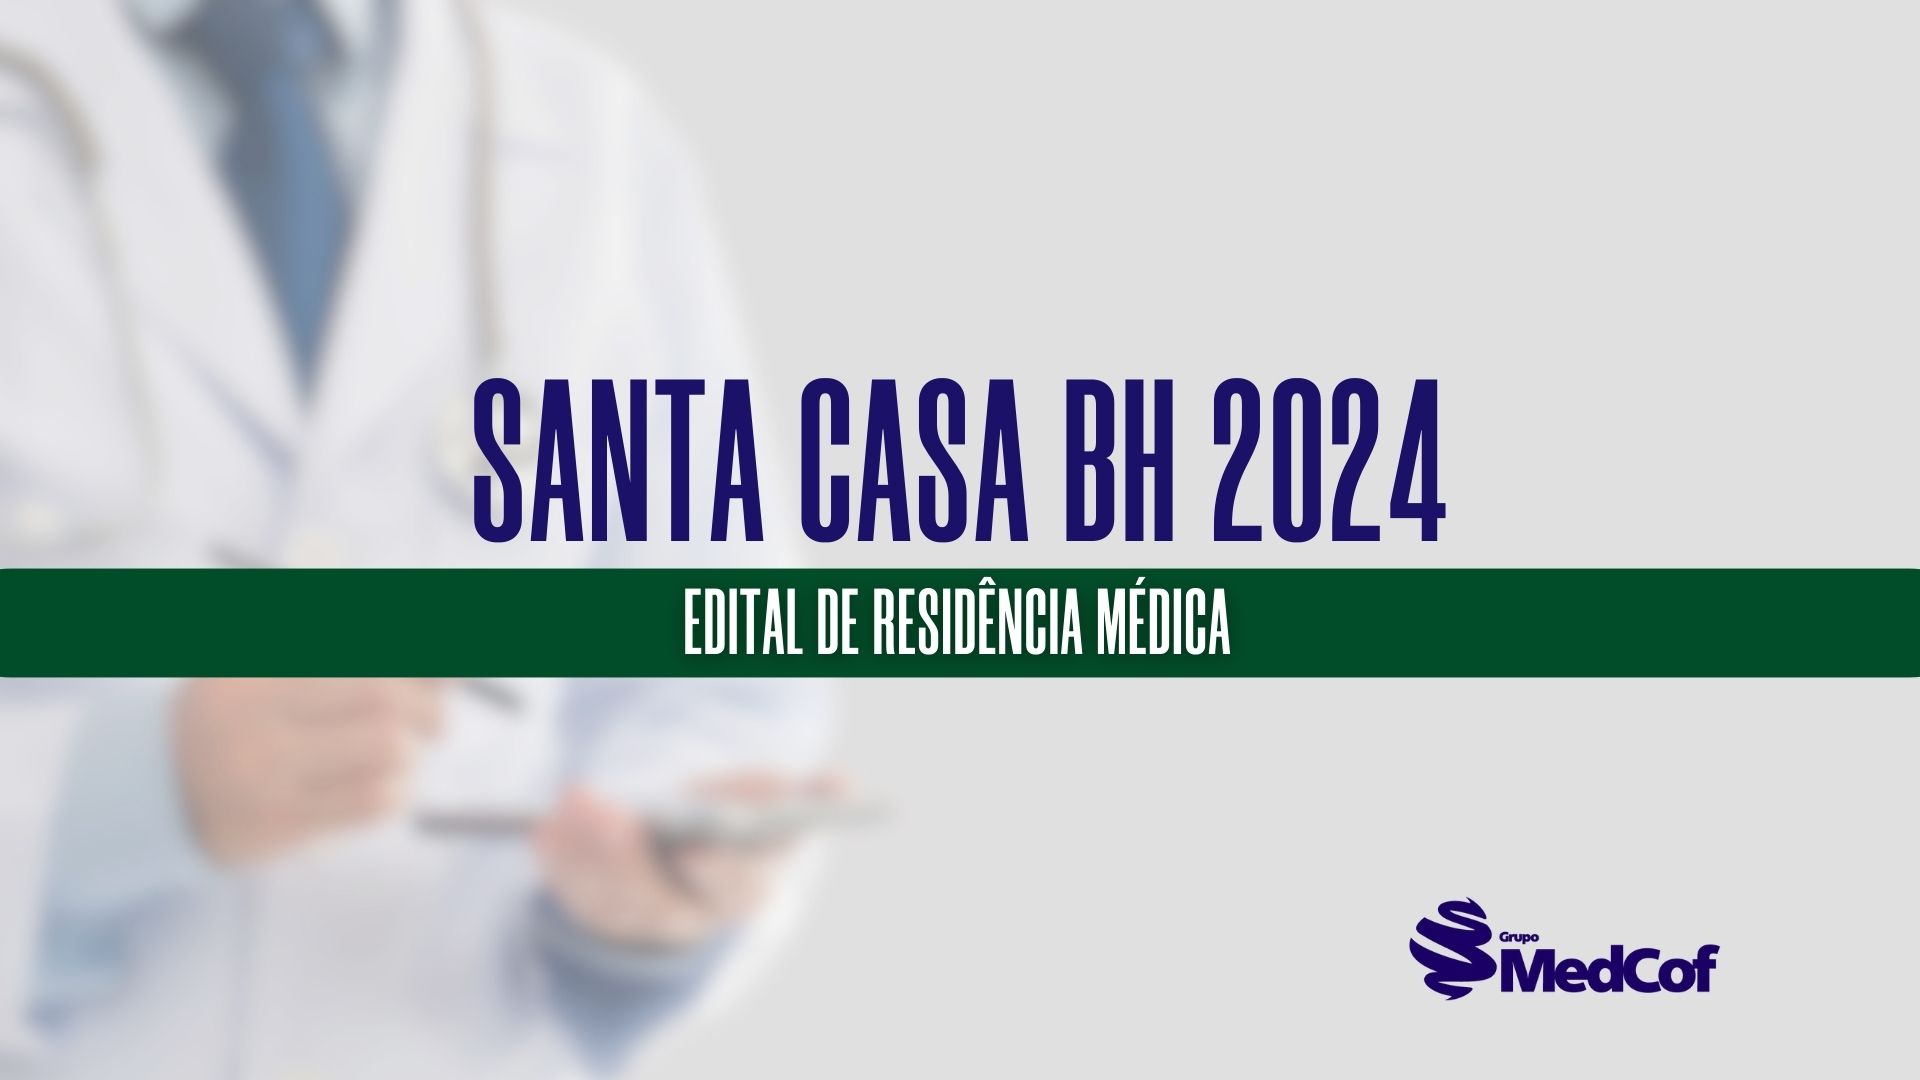 Residência Médica Santa Casa BH 2024 inscrições abertas dia 16 de fevereiro de 2024.